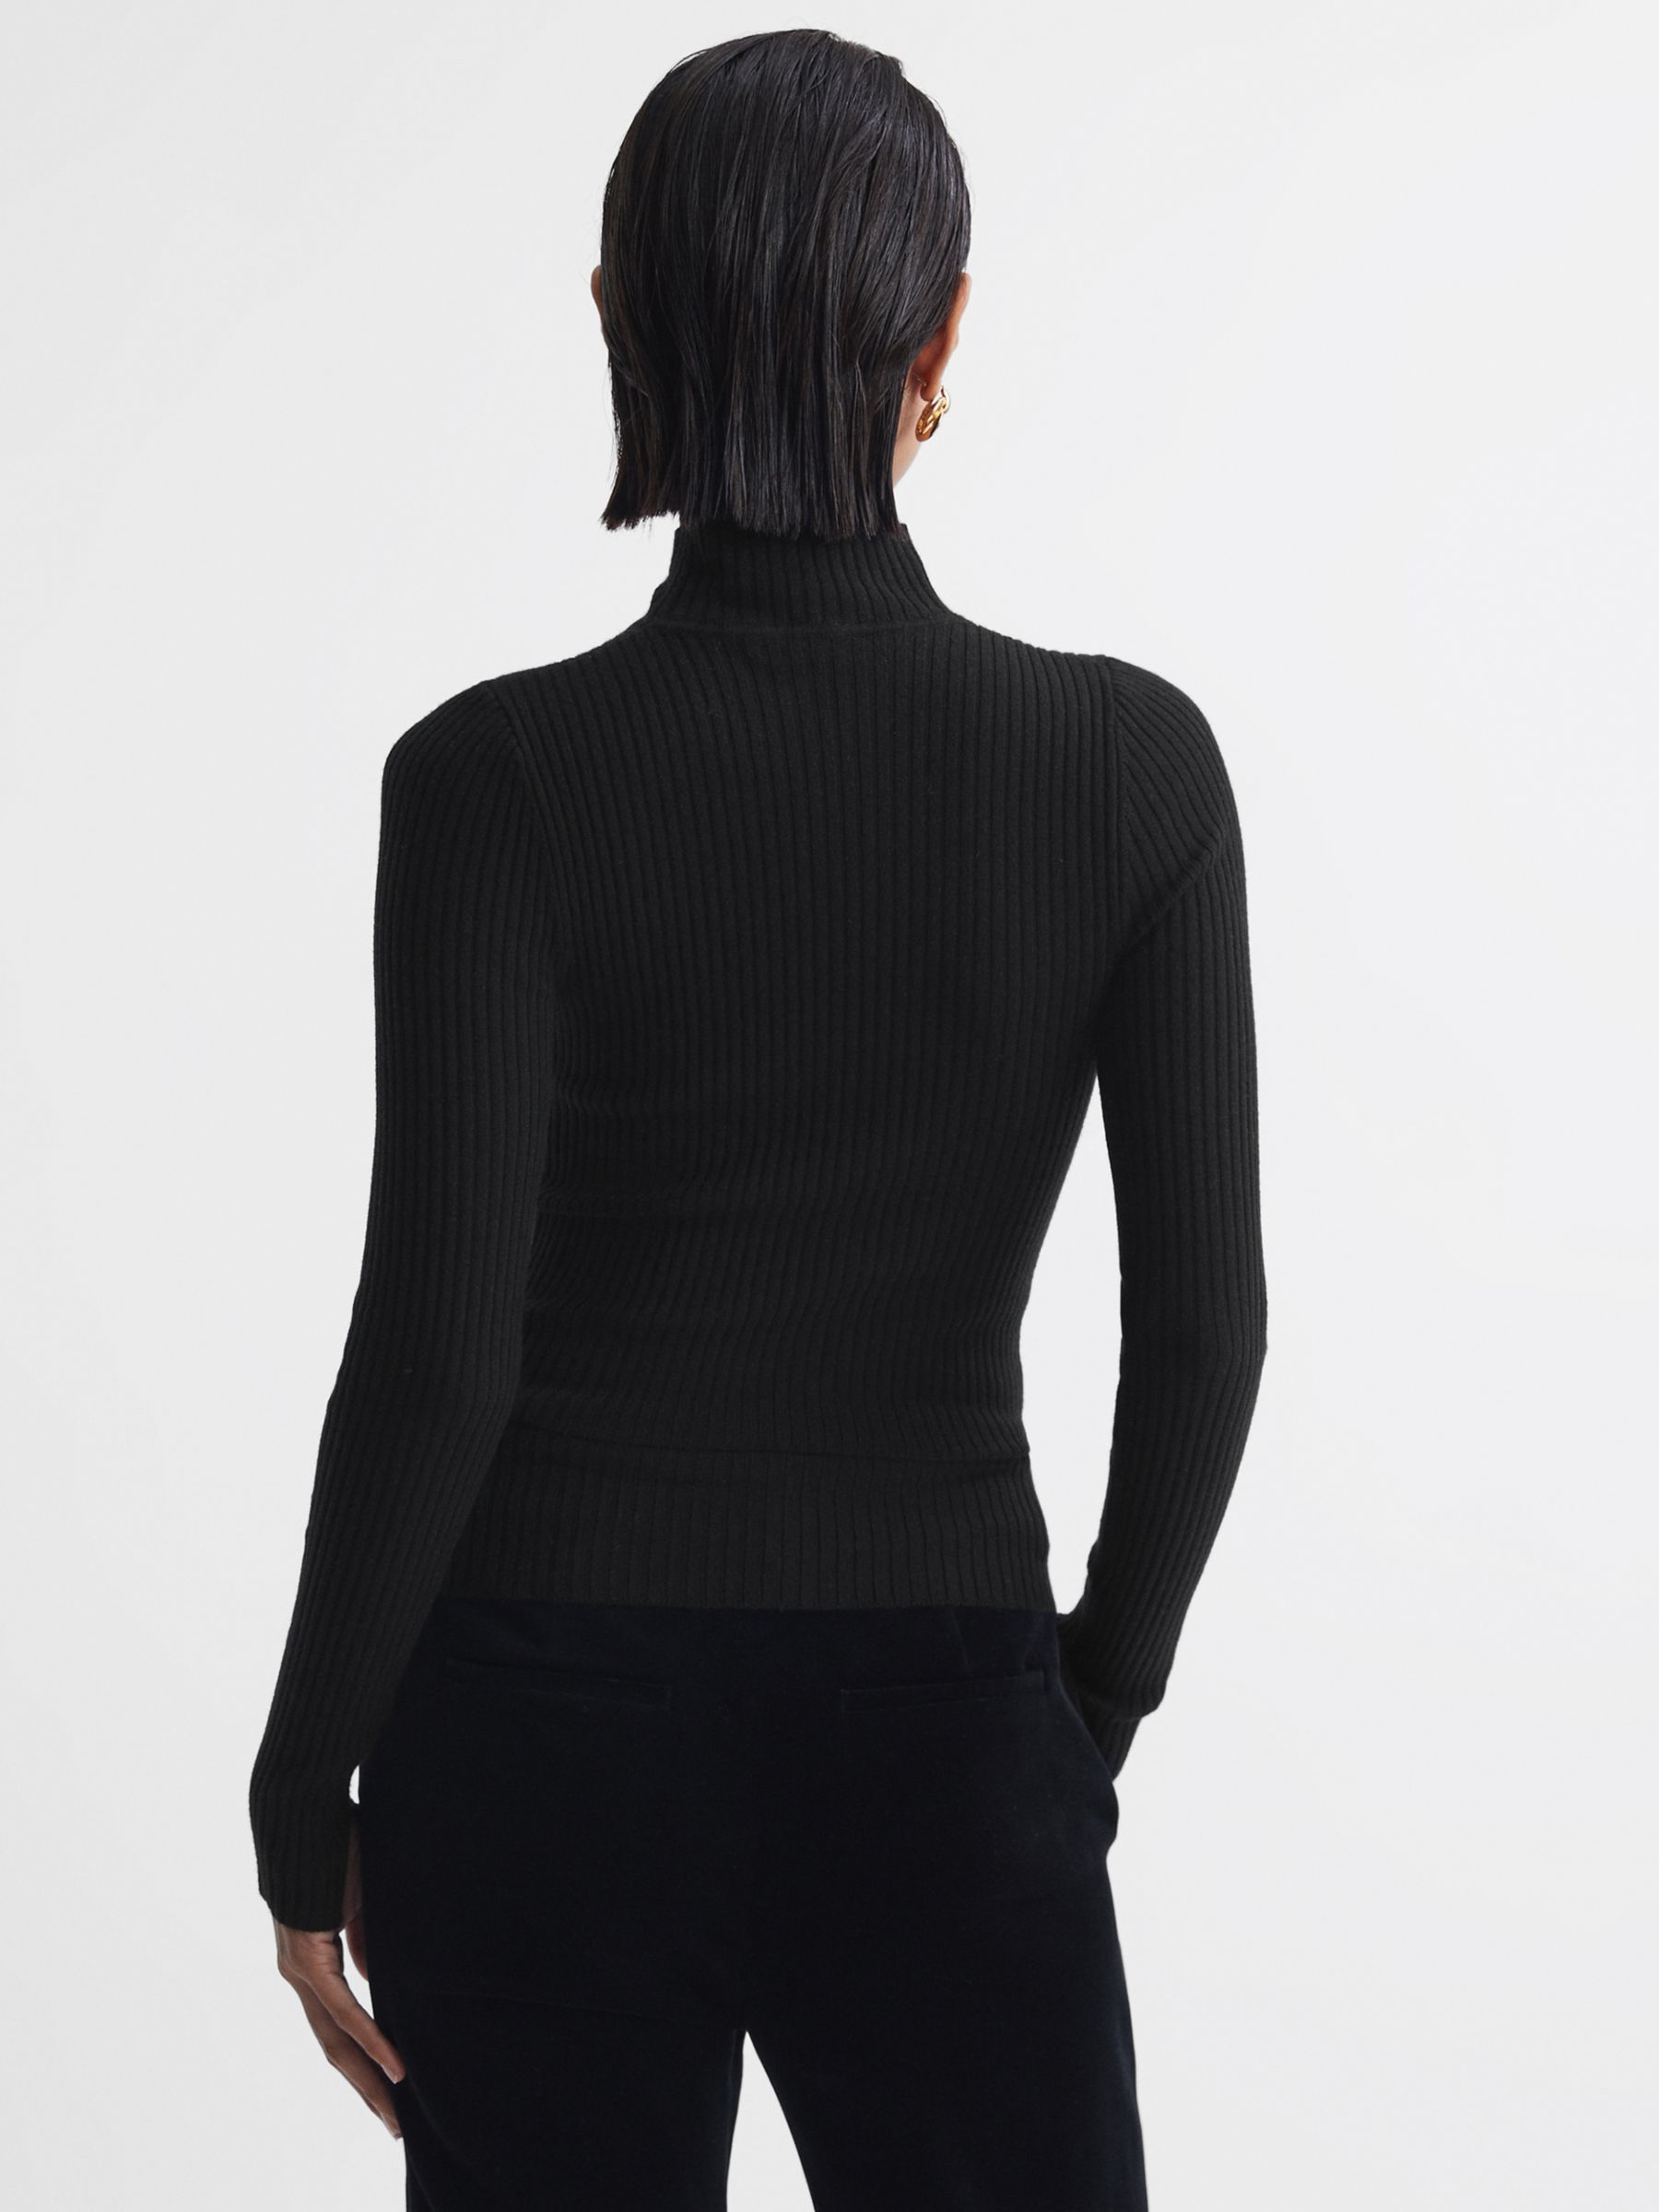 Reiss Rita Mesh Panel Wool Blend Top, Black at John Lewis & Partners